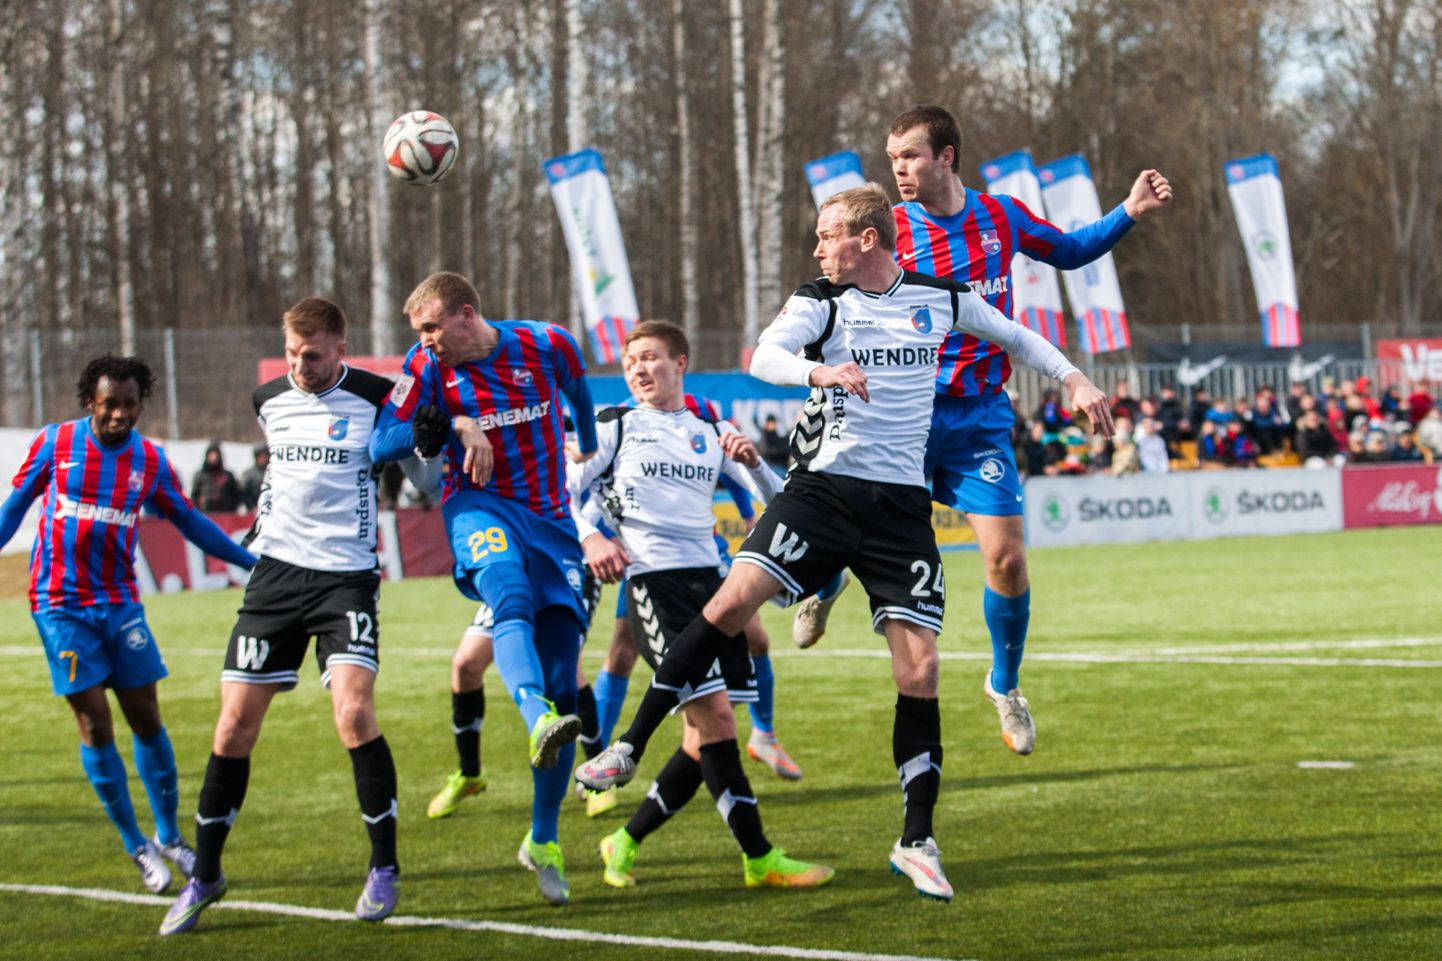 Pärnu linnameeskond võõrustab Eesti jalgpalli meistriliiga 14. vooru mängus kodusel Raeküla staadionil Paide linnameeskonda.